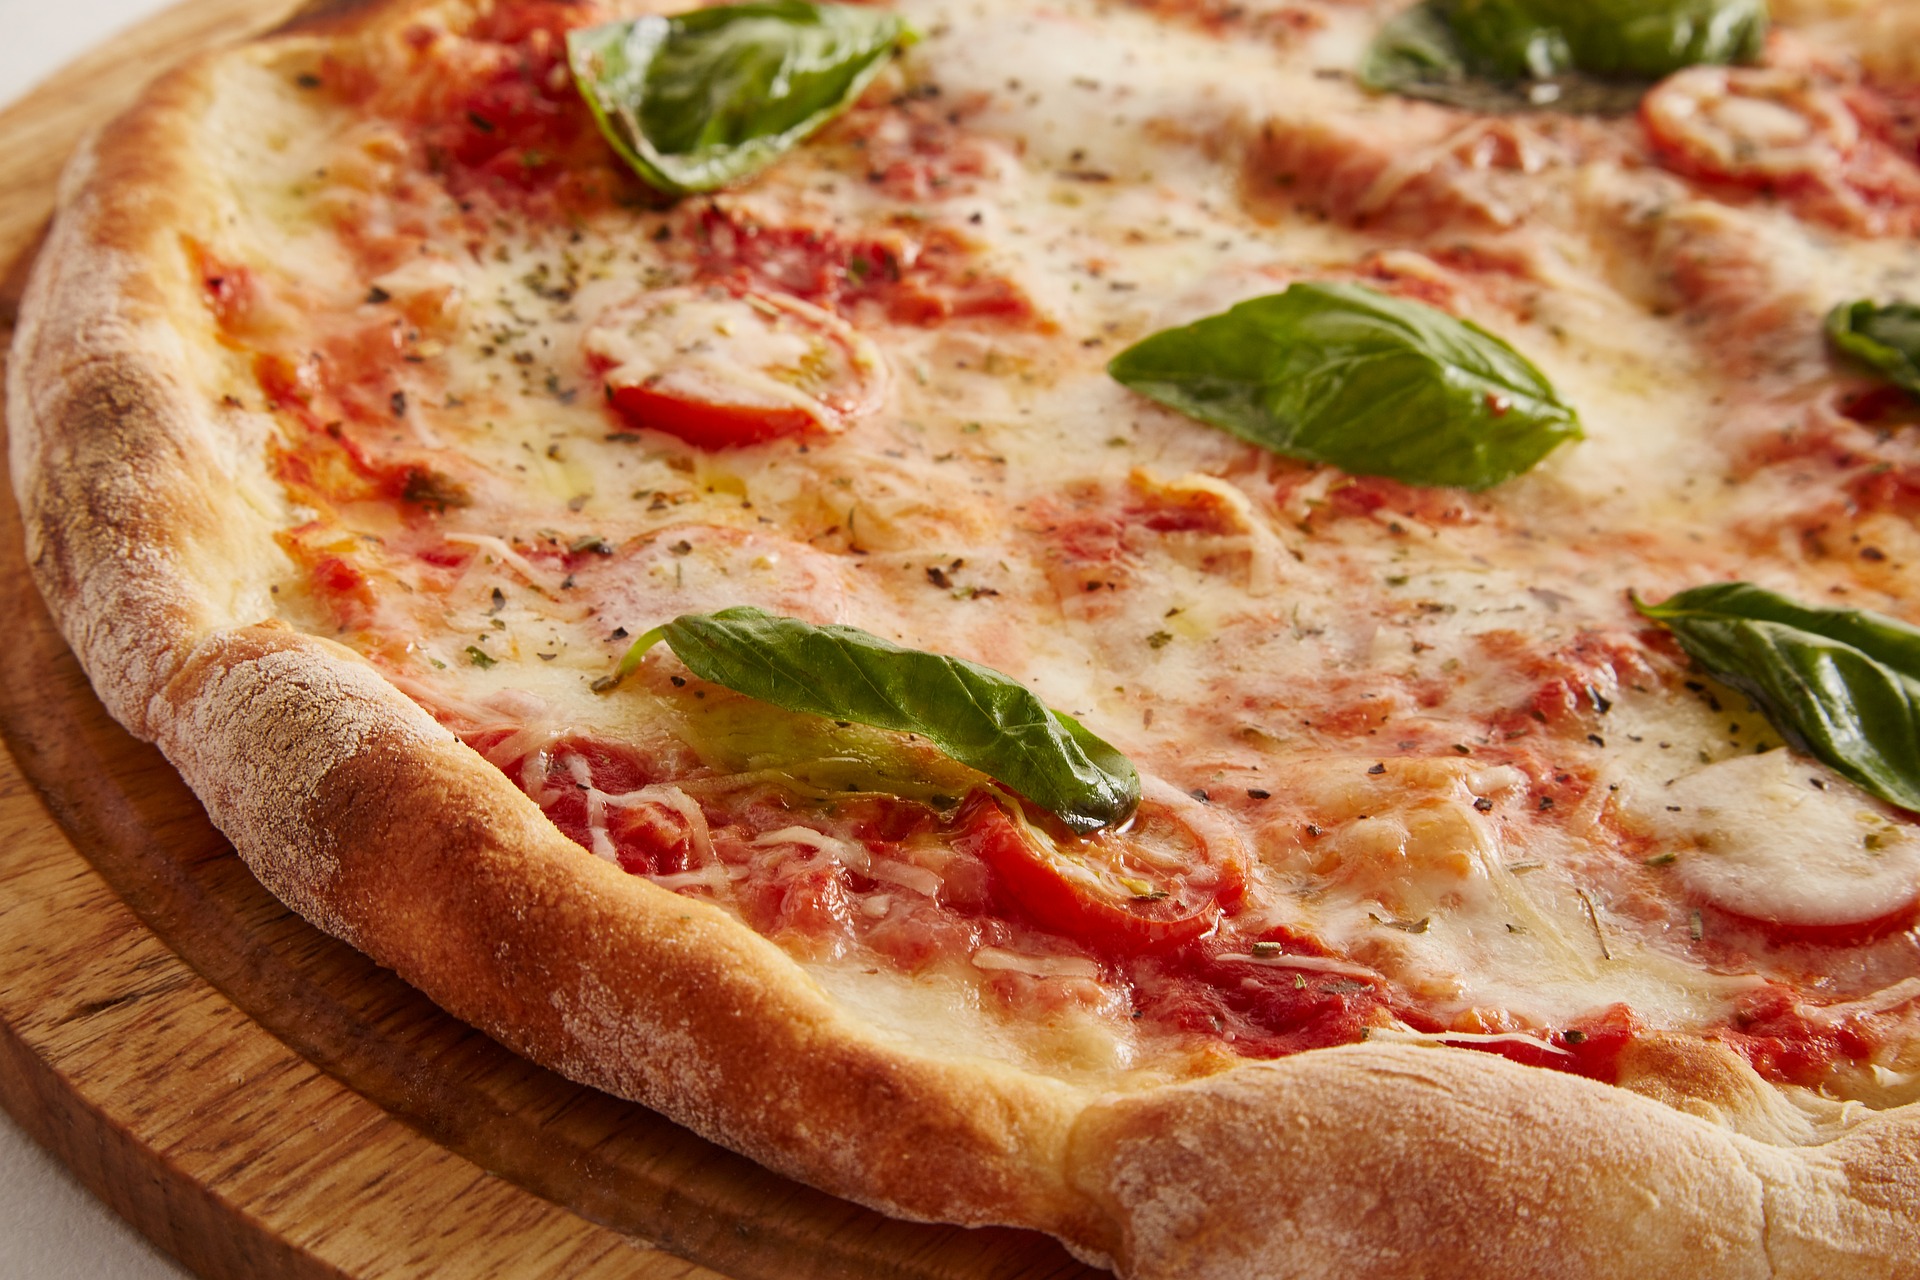 Ziua Internațională a Pizza